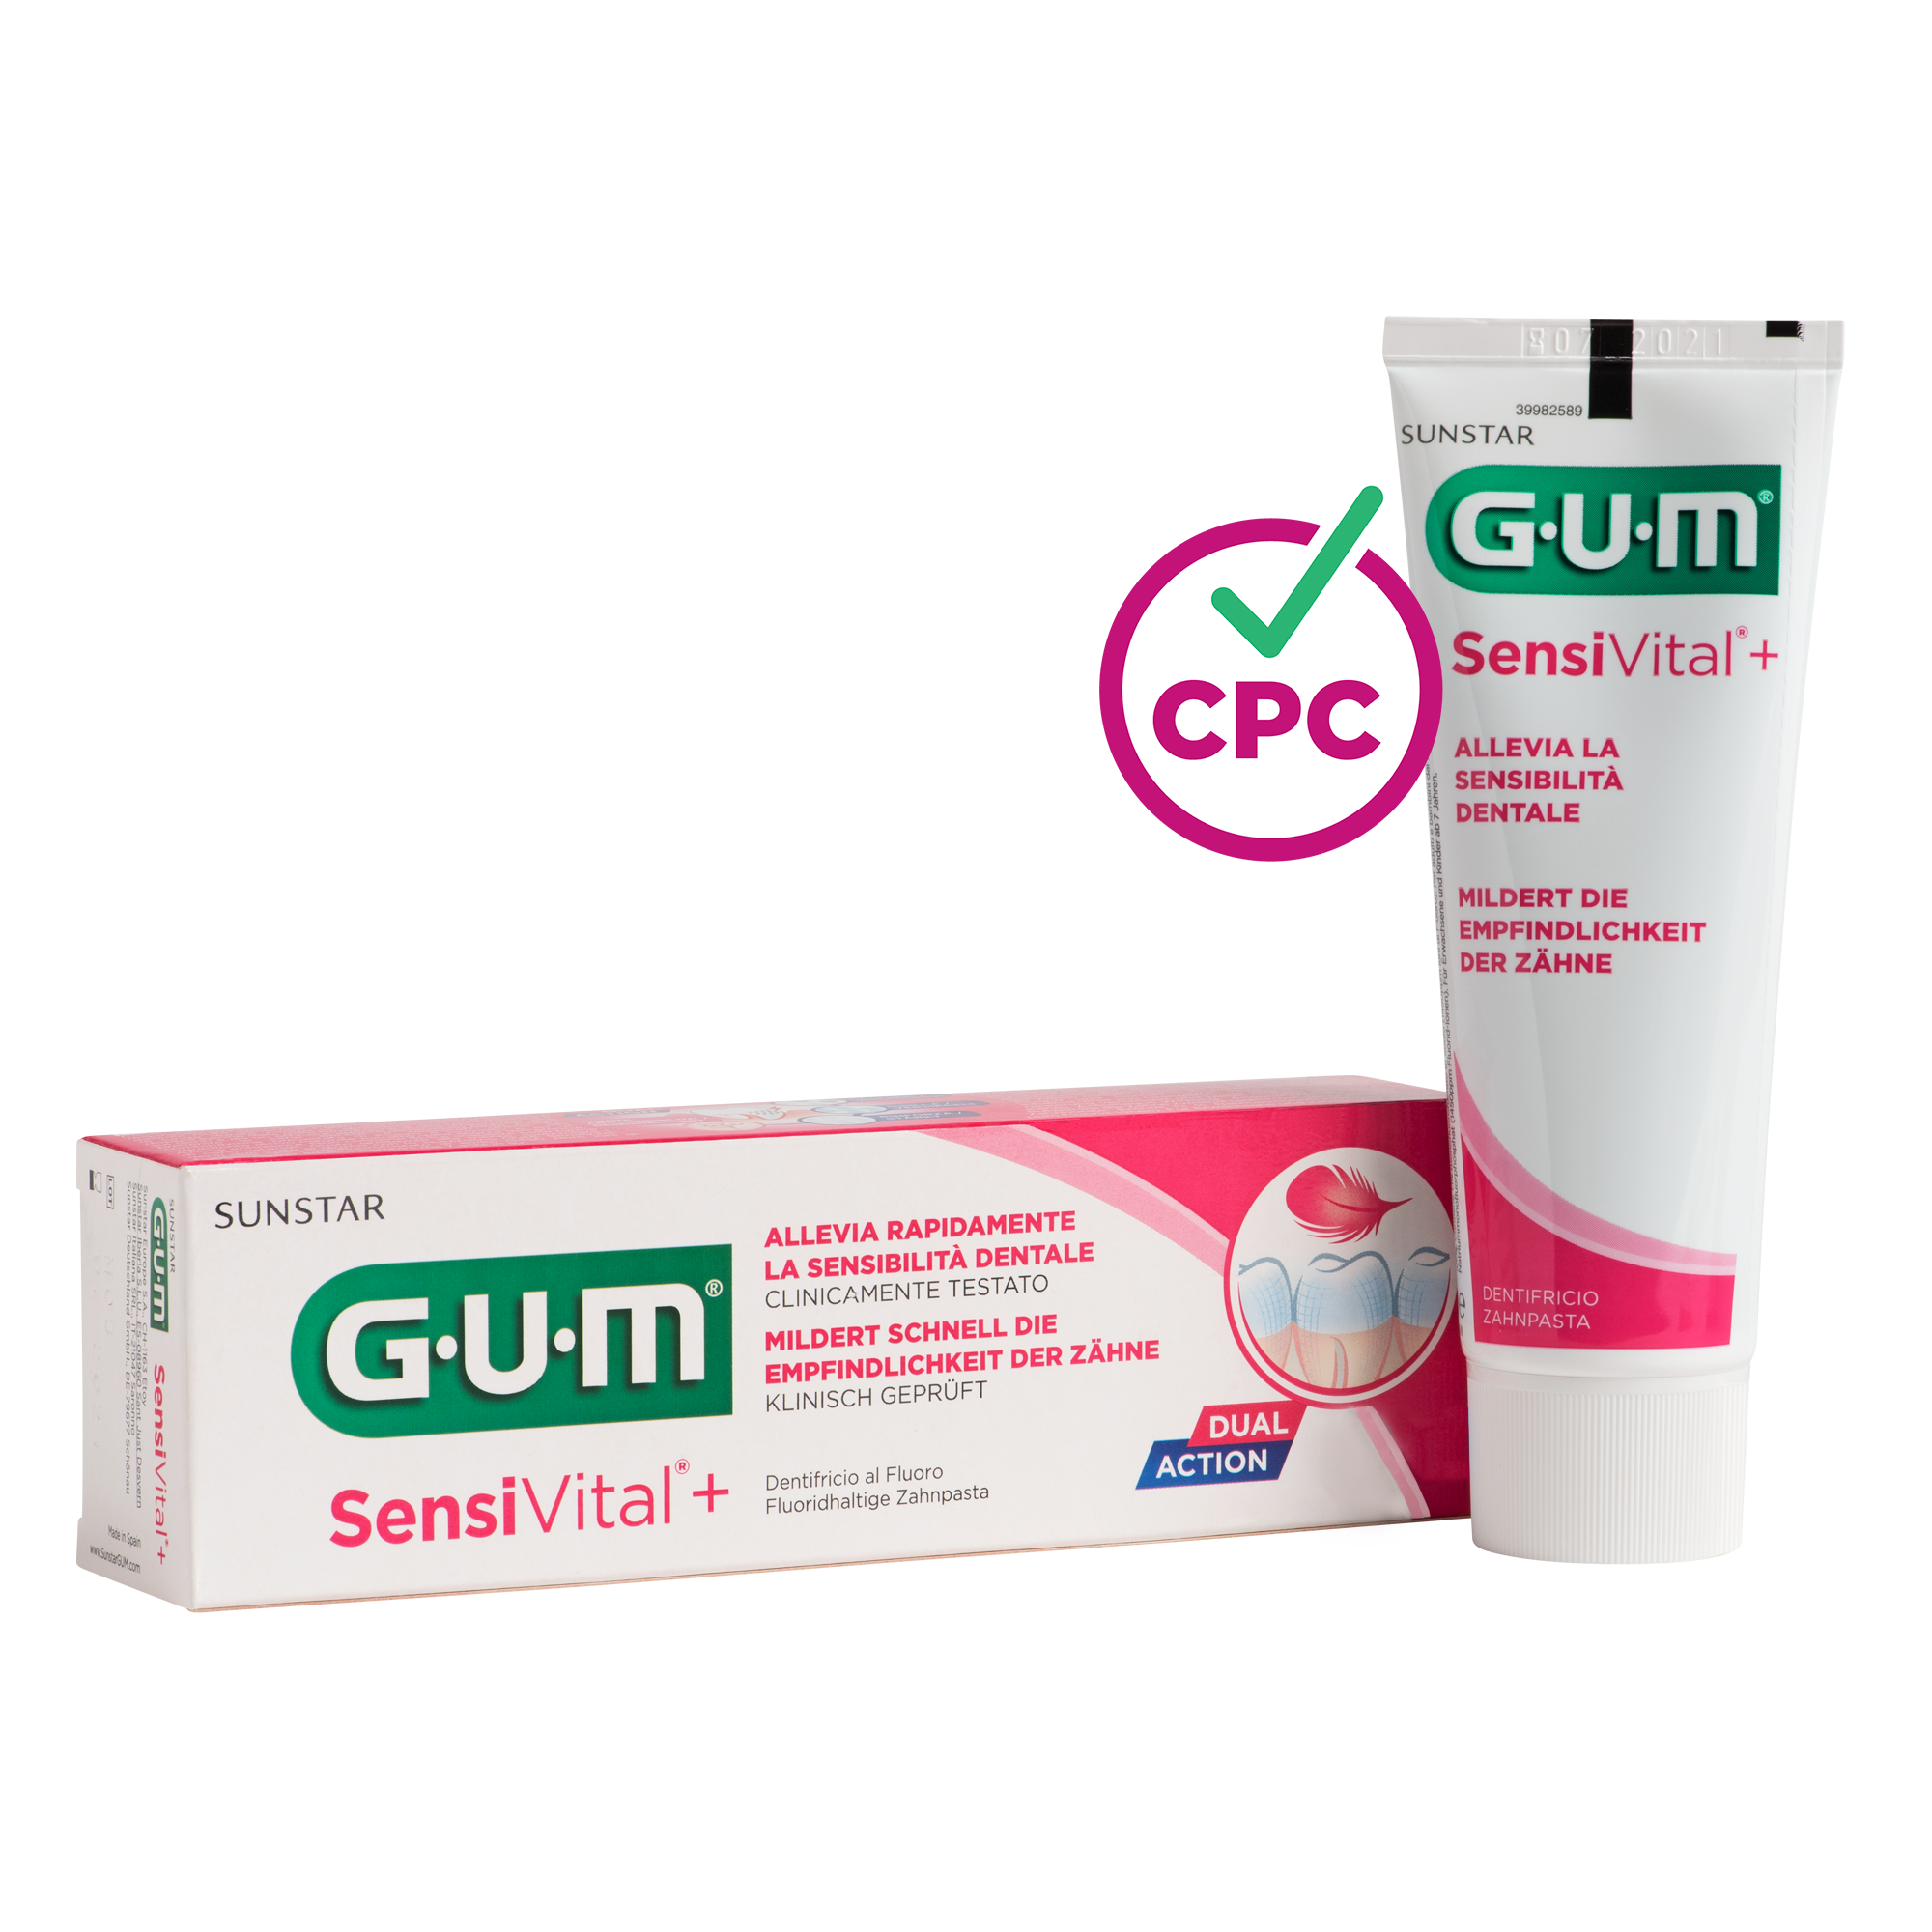 P6070-DE-IT-GUM-SensiVital-plus-Toothpaste-75ml-Box-Tube-CPC